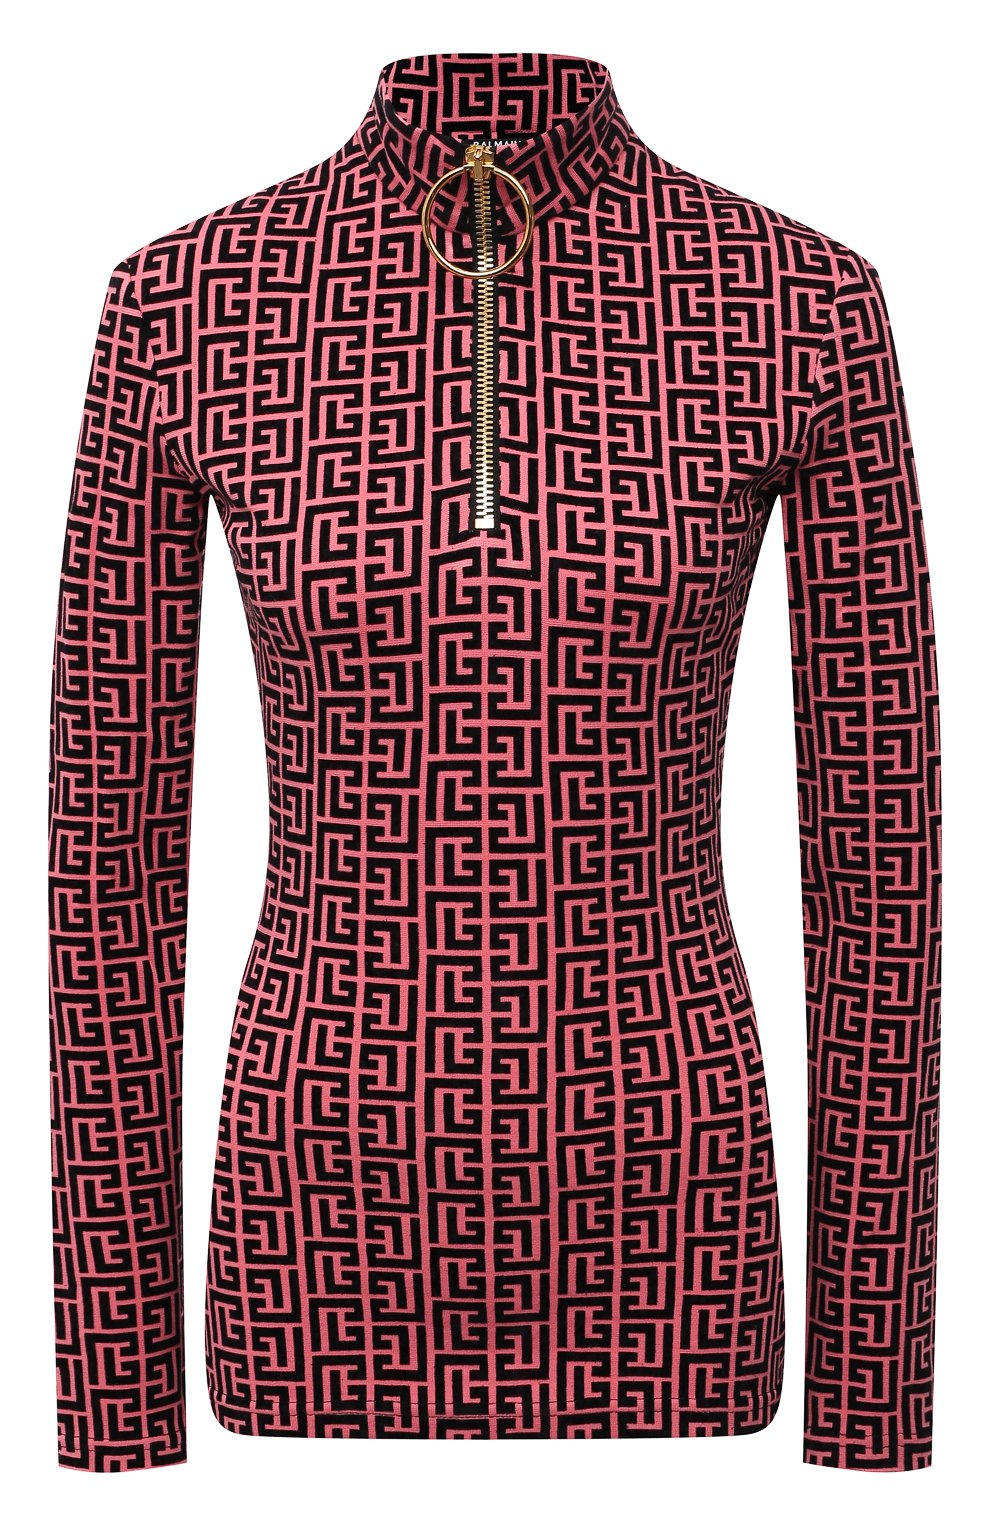 Женский пуловер из вискозы balmain x rossignol BALMAIN фуксия цвета, арт. WF2AR150/J226 | Фото 1 (Рукава: Длинные; Длина (для топов): Стандартные; Стили: Спорт-шик; Материал внешний: Вискоза; Женское Кросс-КТ: Пуловер-одежда)